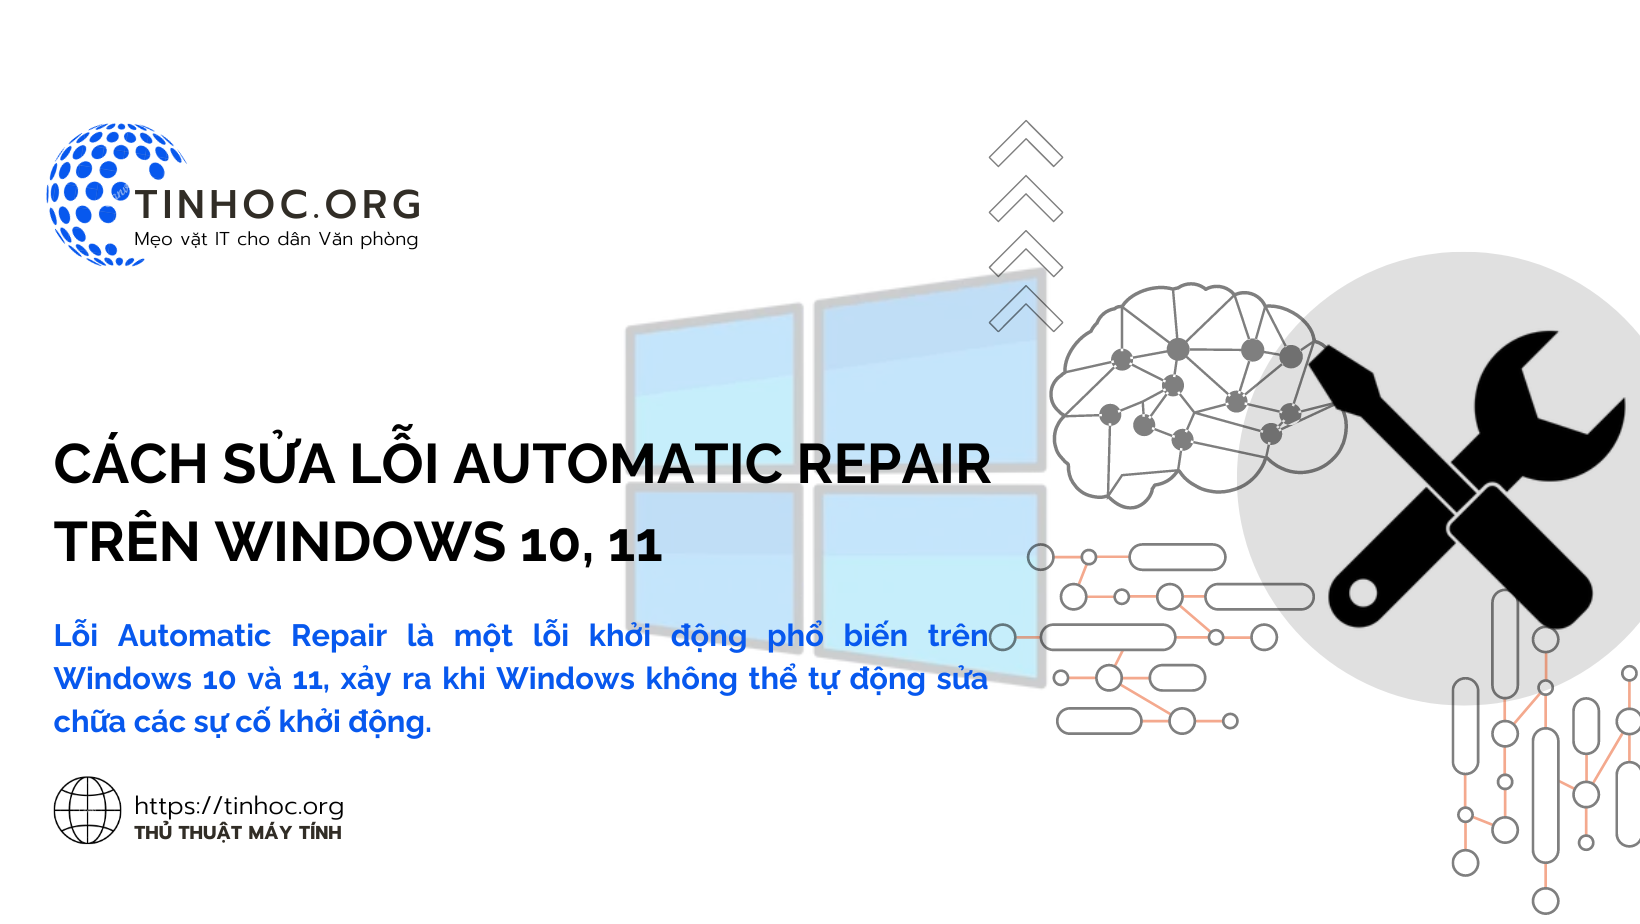 Lỗi Automatic Repair là một lỗi khởi động phổ biến trên Windows 10 và 11, xảy ra khi Windows không thể tự động sửa chữa các sự cố khởi động.